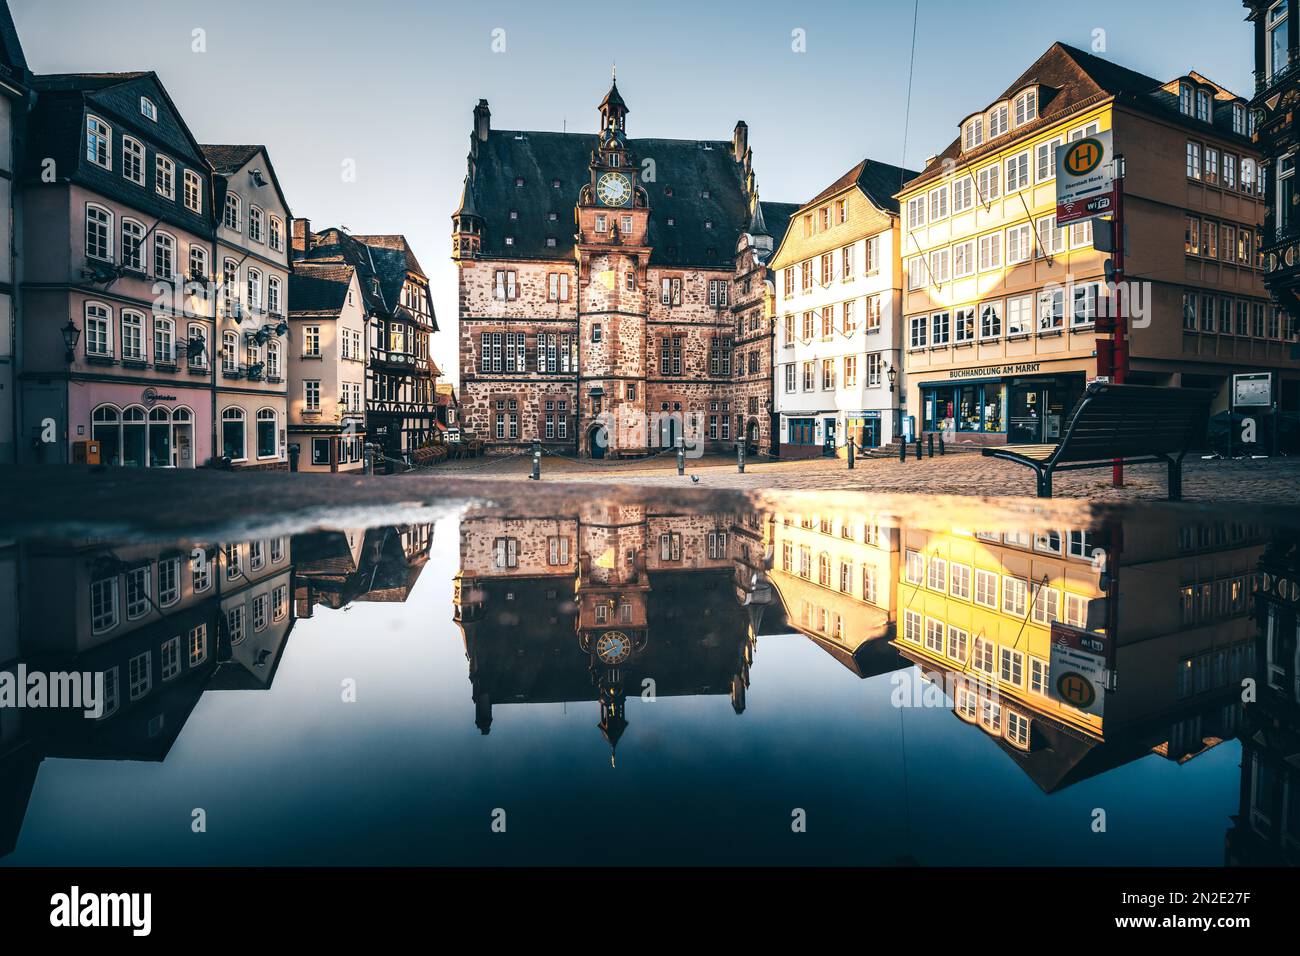 Altstadt, Marktplatz mit Restaurants, Marktplatz, Rathaus auf der rechten Seite, Marburg, Hessen, Deutschland Stockfoto